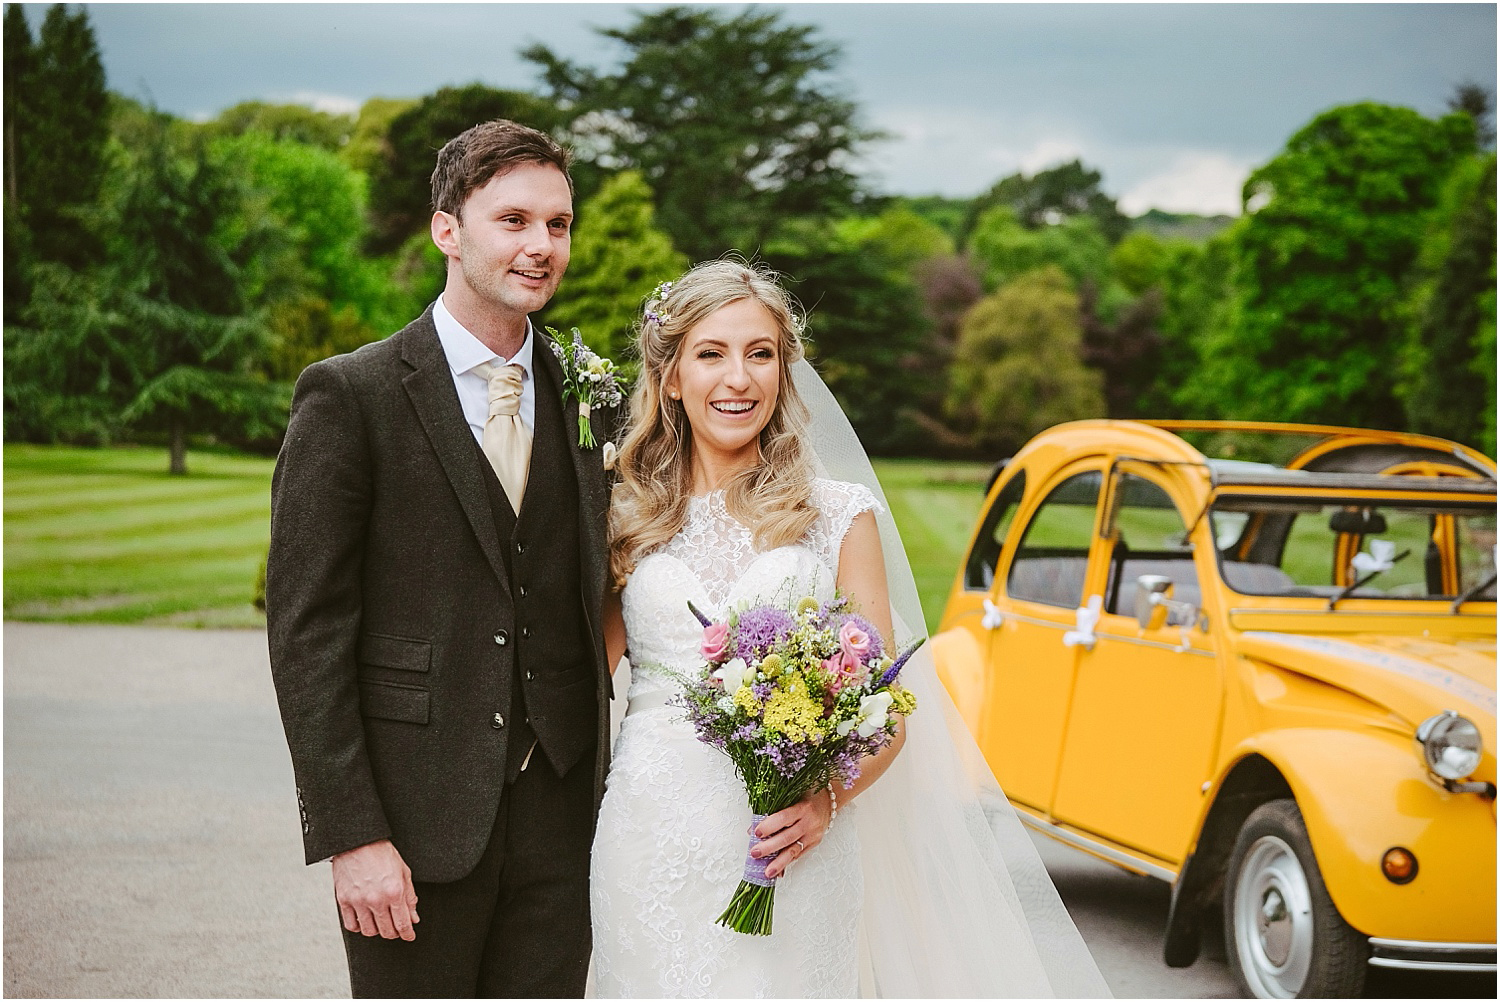 Beamish Hall wedding photography - Laura and Richard_0064.jpg